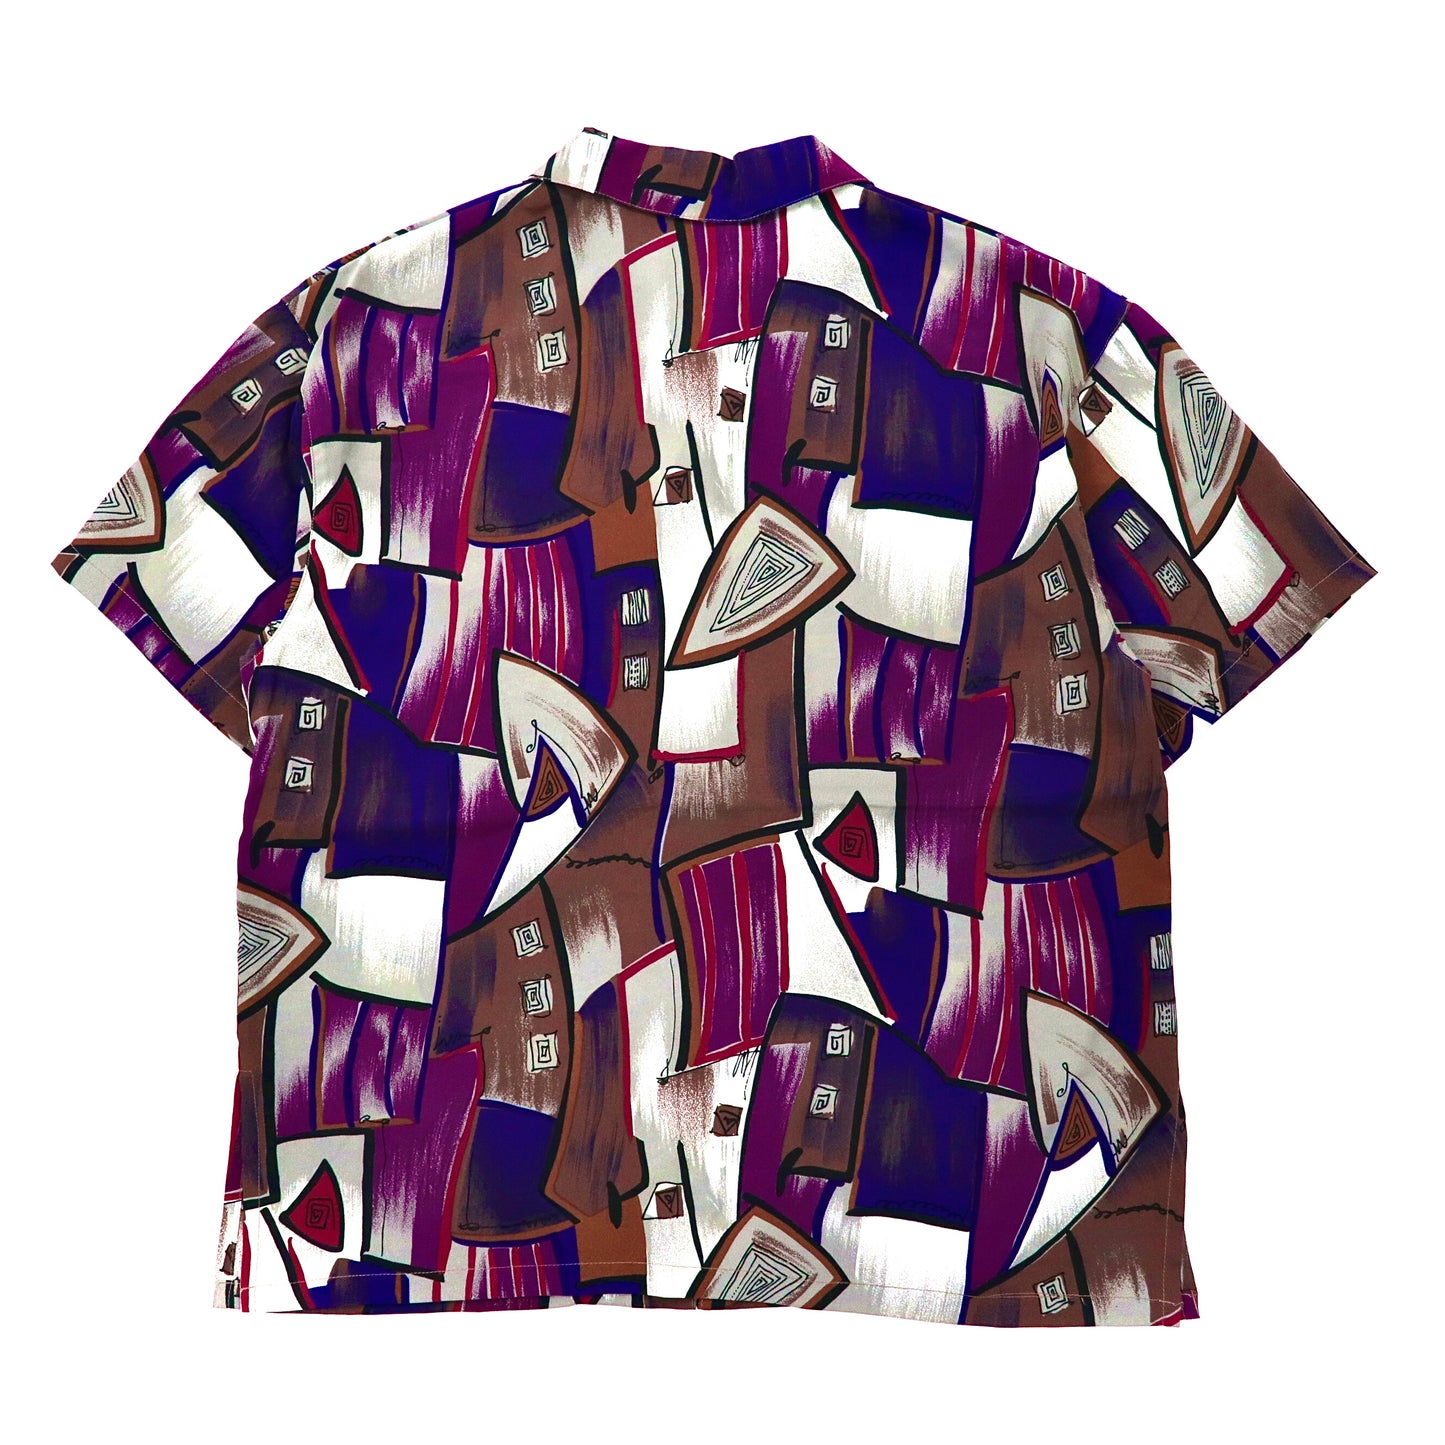 Lady's Mode 半袖オープンカラーシャツ M マルチカラー  ポリエステル 総柄 レトロ 幾何学